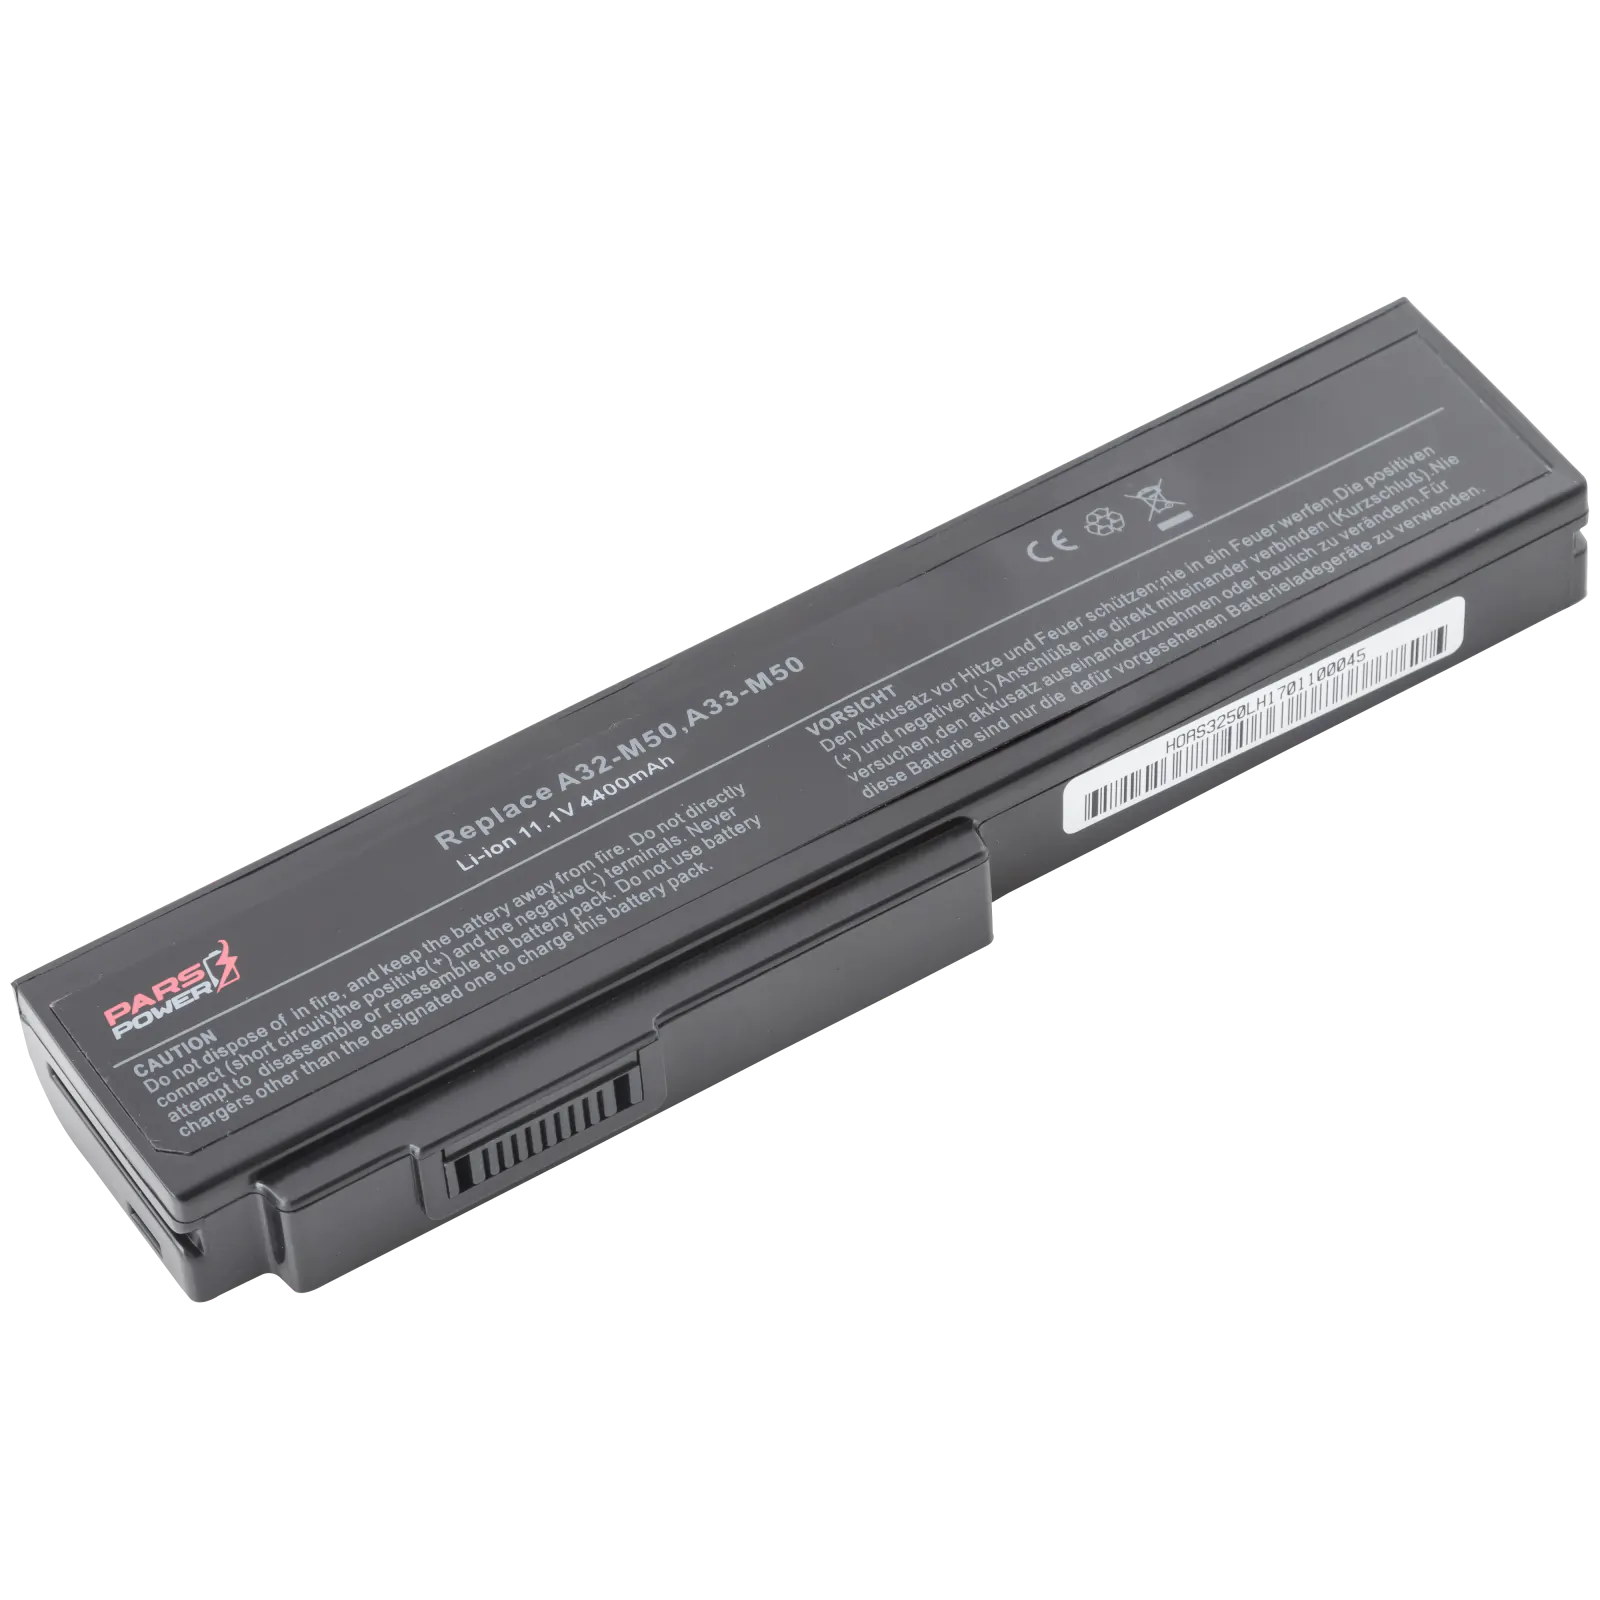 Asus 15G10N373800, 15G10N373830 Notebook Batarya - Pil (Pars Power)